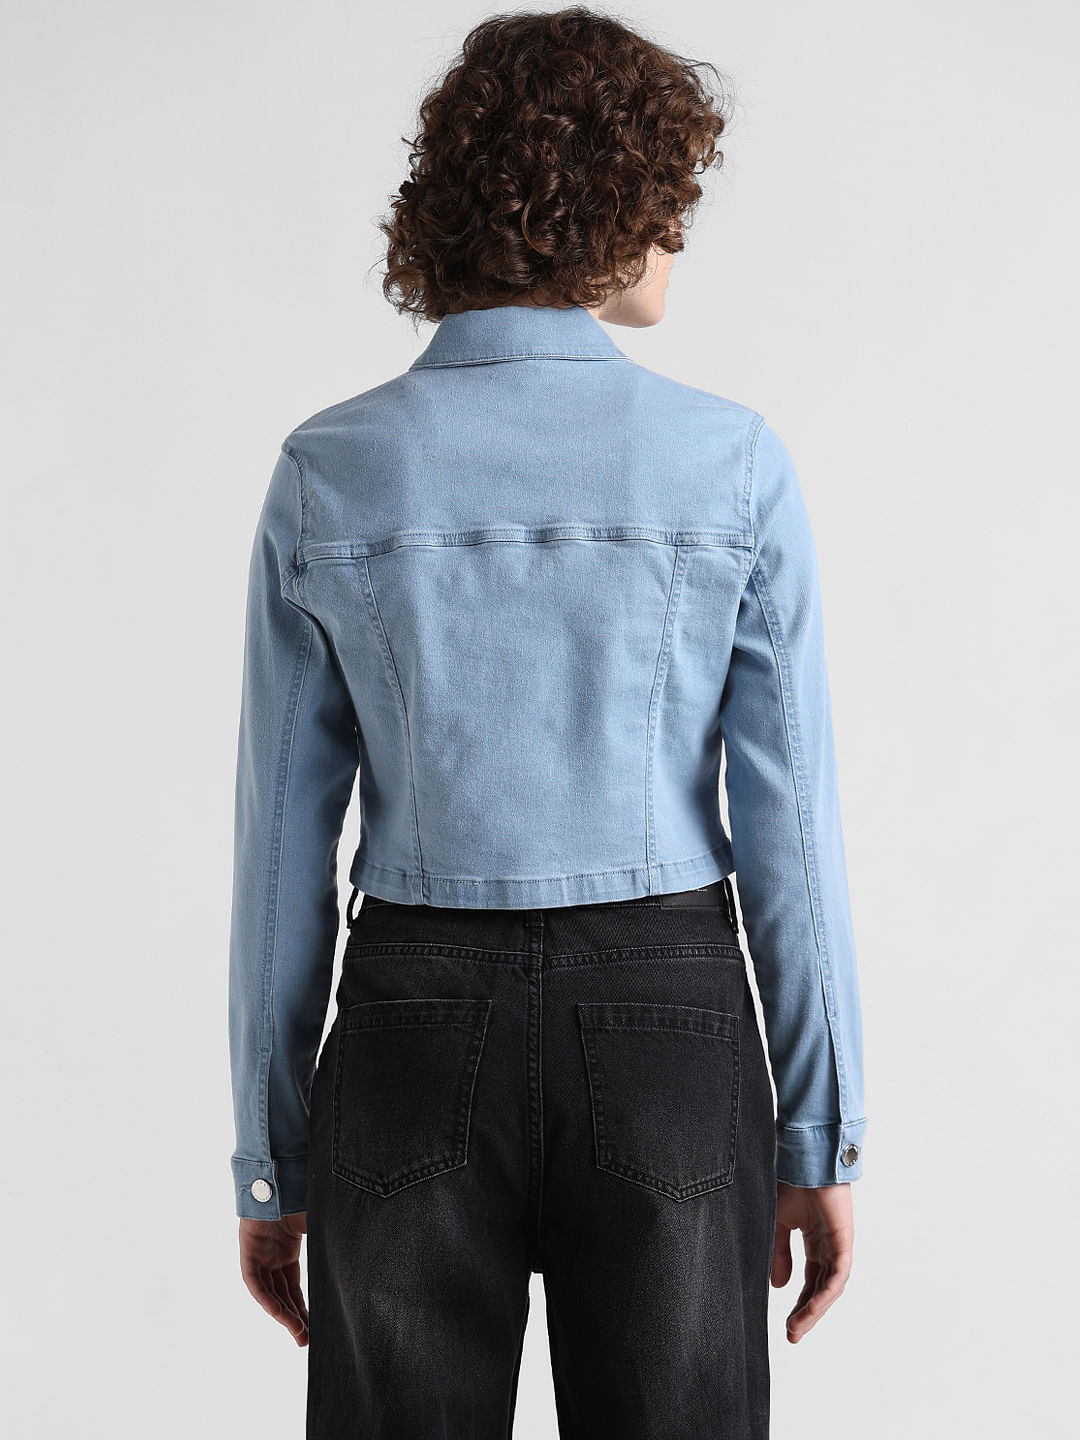 Indigo Blue Wash Contrast Edge Crop Denim Jacket | PrettyLittleThing